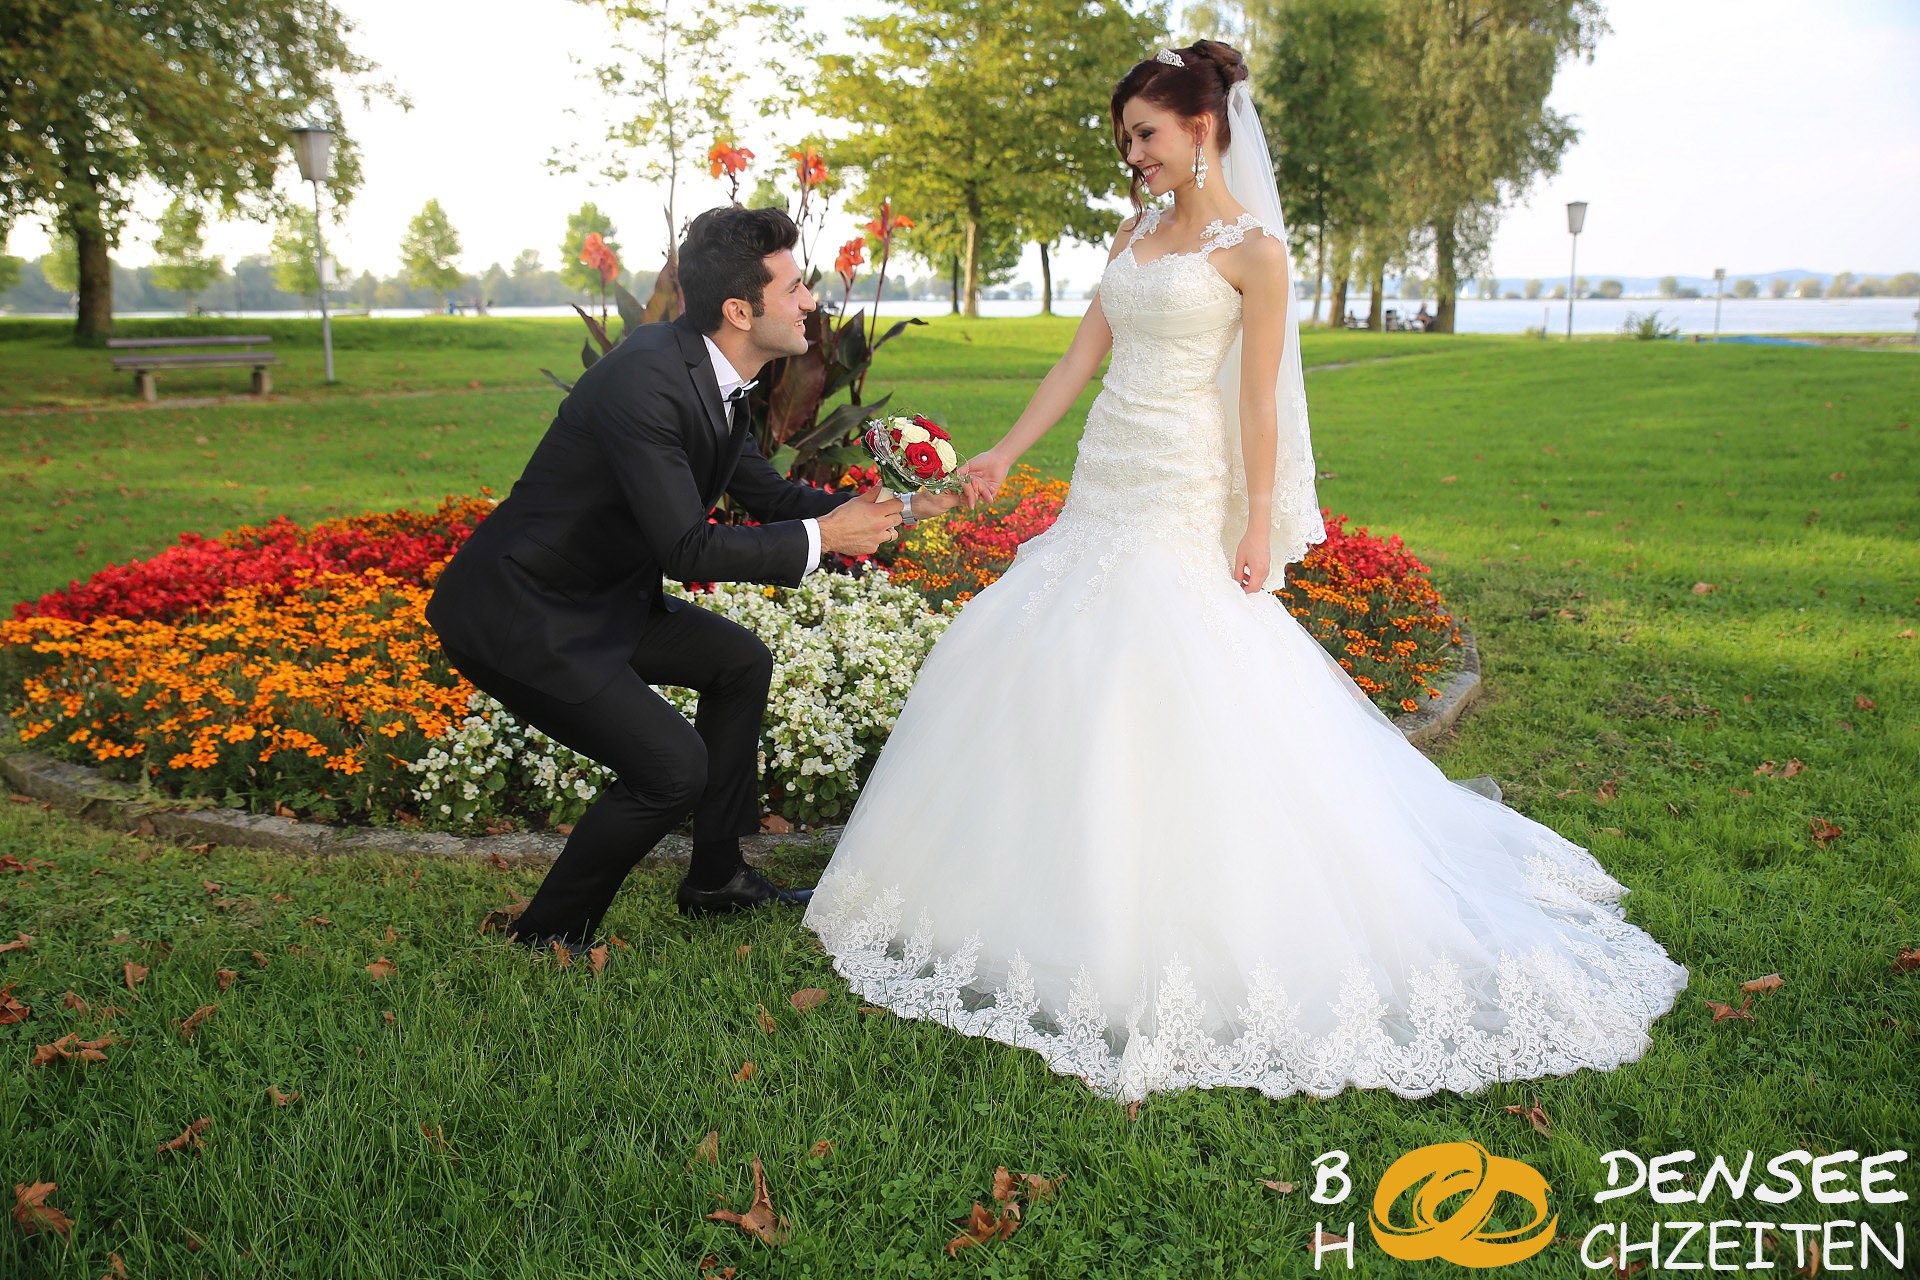 2014 09 06 Hochzeit Hohenems Sercan Muazzez BODENSEE HOCHZEITEN COM IMG 8441